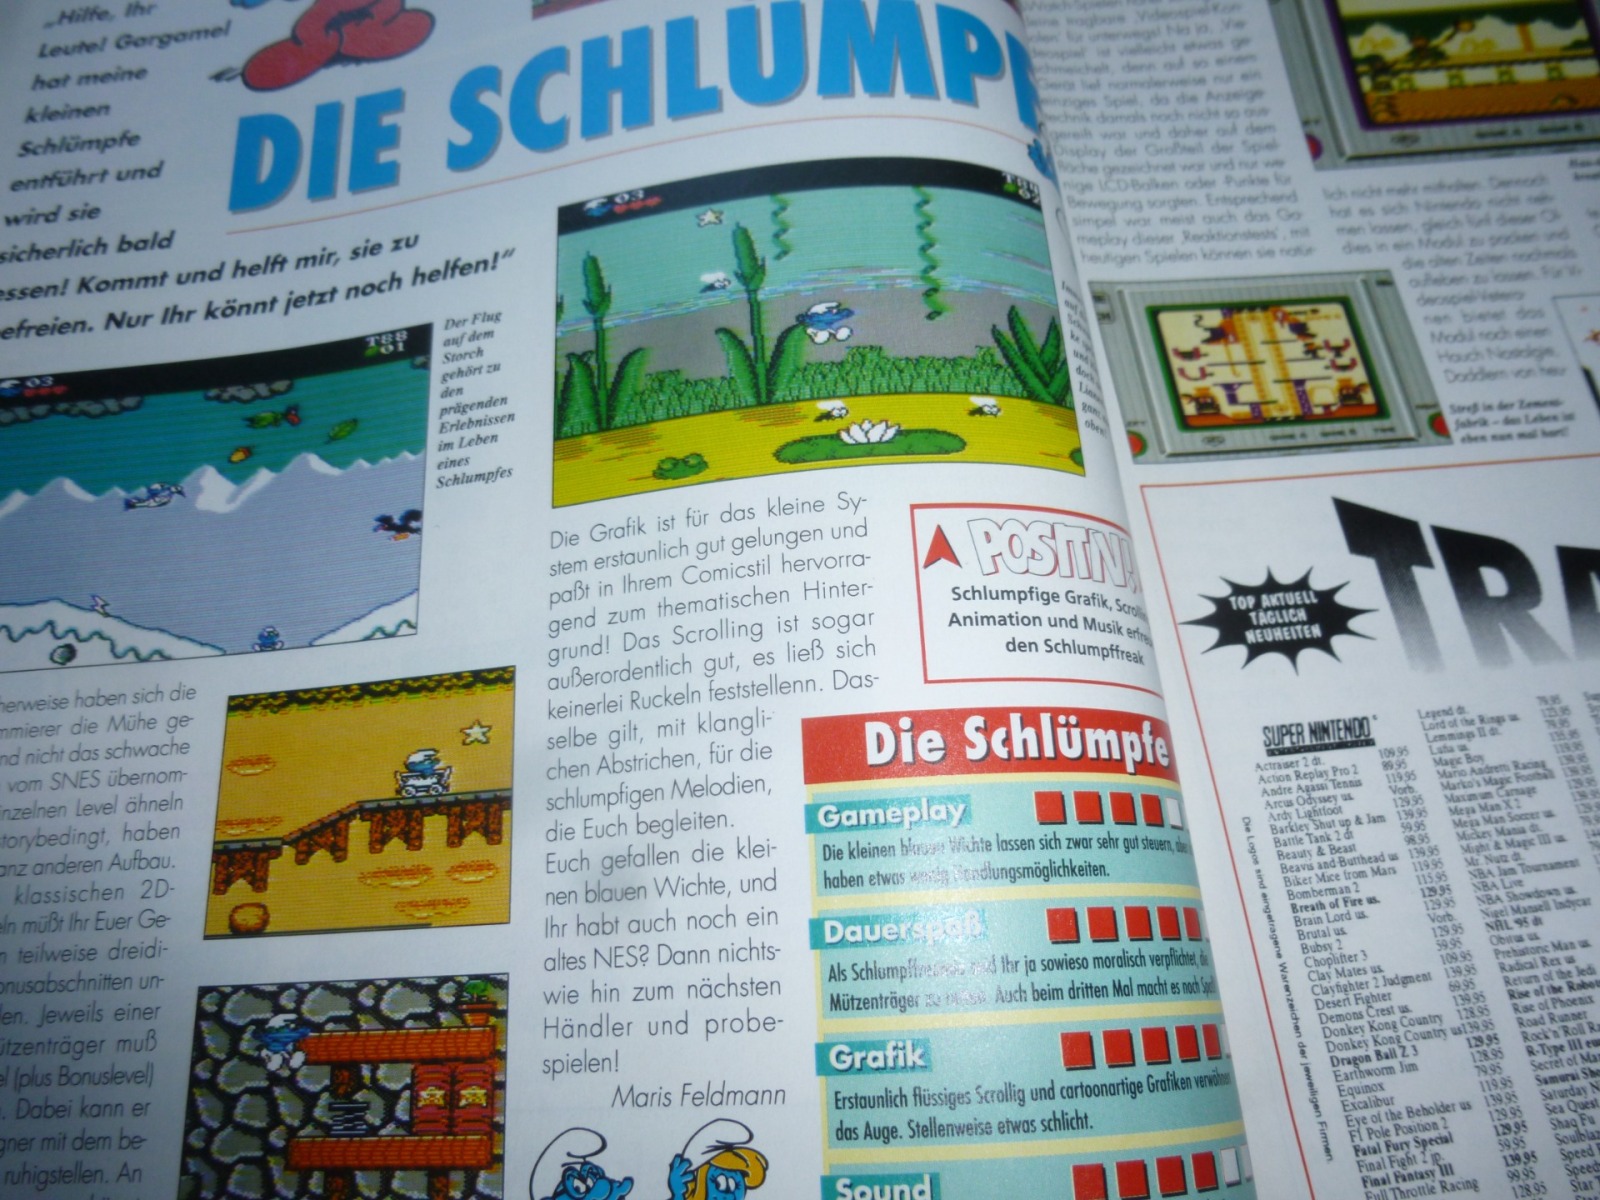 TOTAL Das unabhängige Magazin - 100% Nintendo - Ausgabe 5/95 1995 12